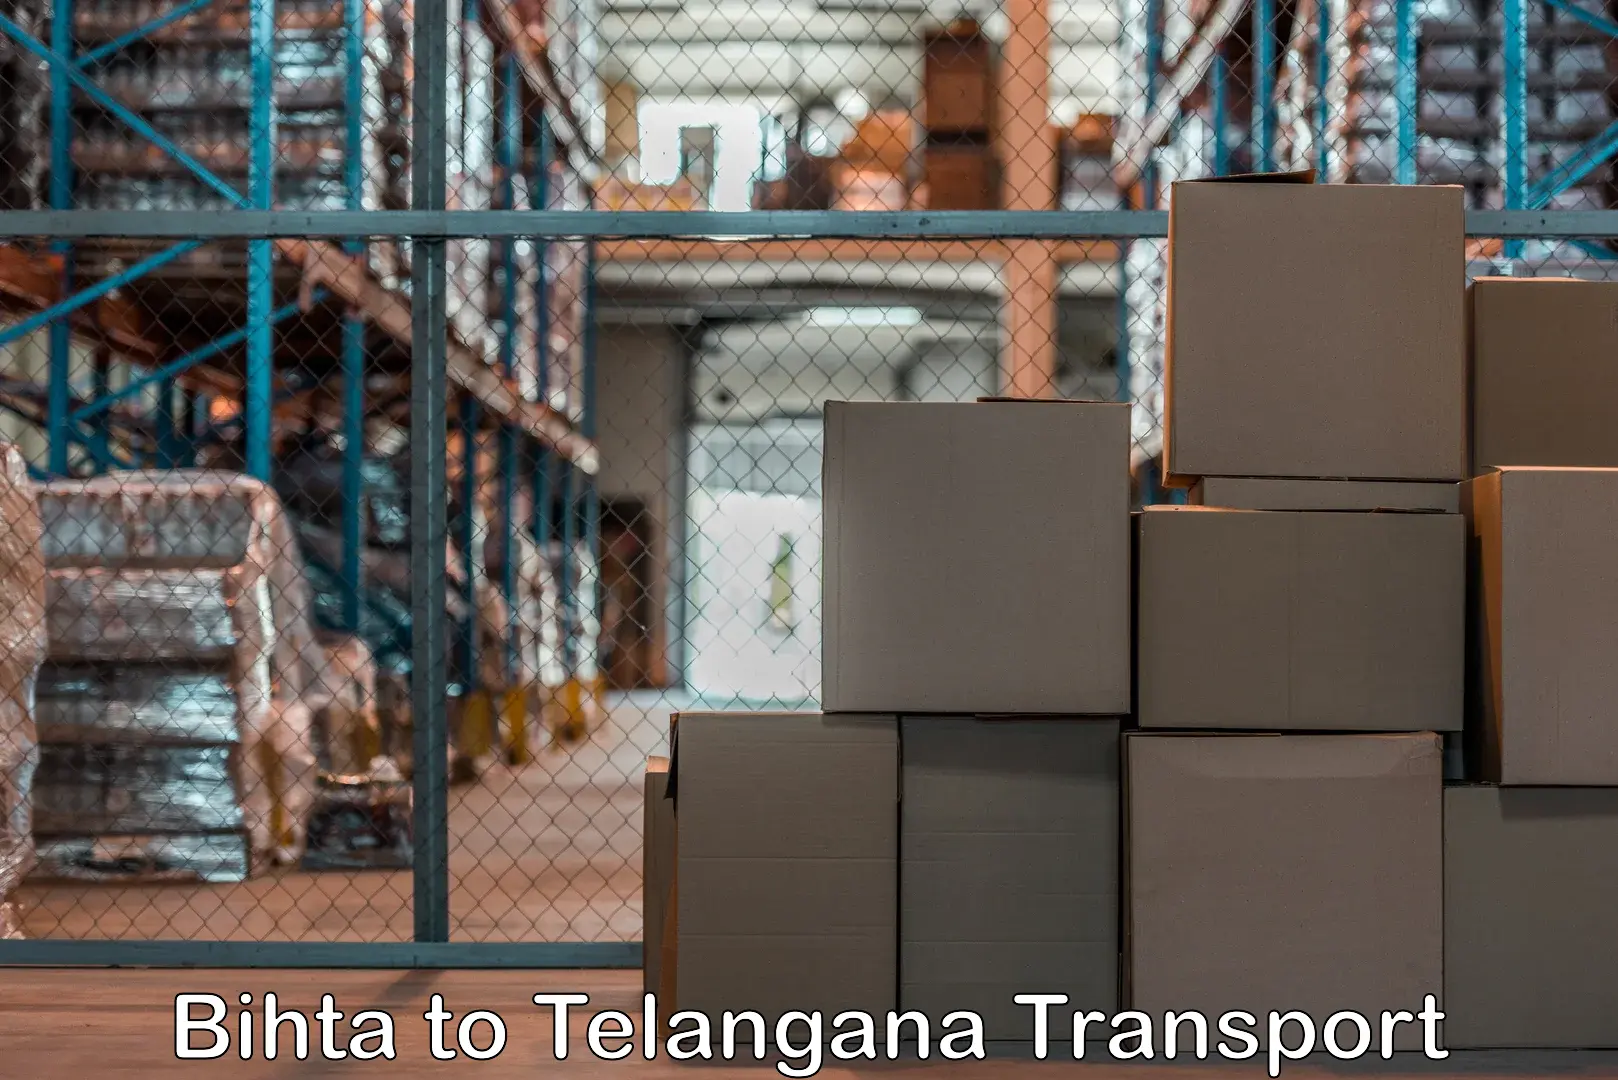 Truck transport companies in India Bihta to Tadoor